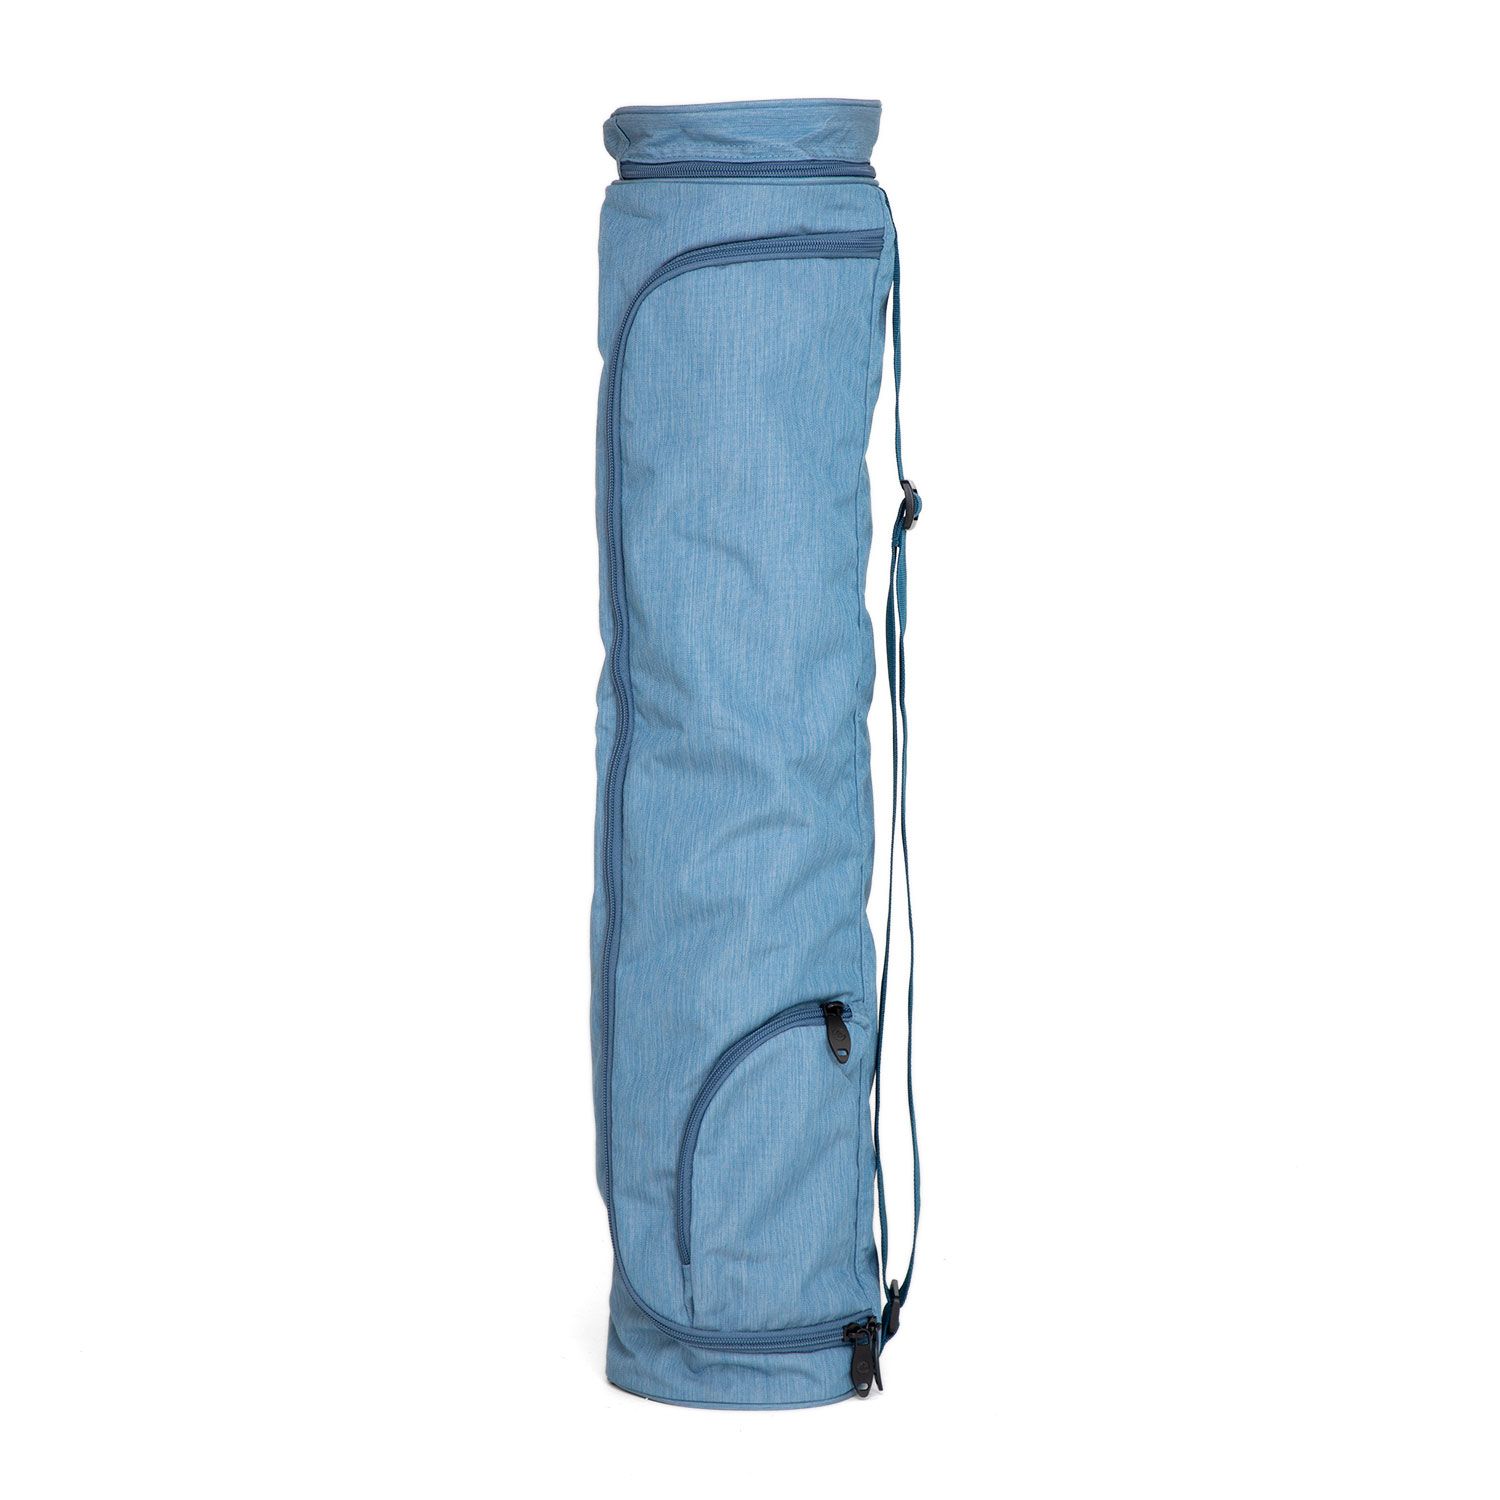 Yogamatten Tasche Asana Bag XL 70 graublau meliert , Polyester/Polyamide bestickt